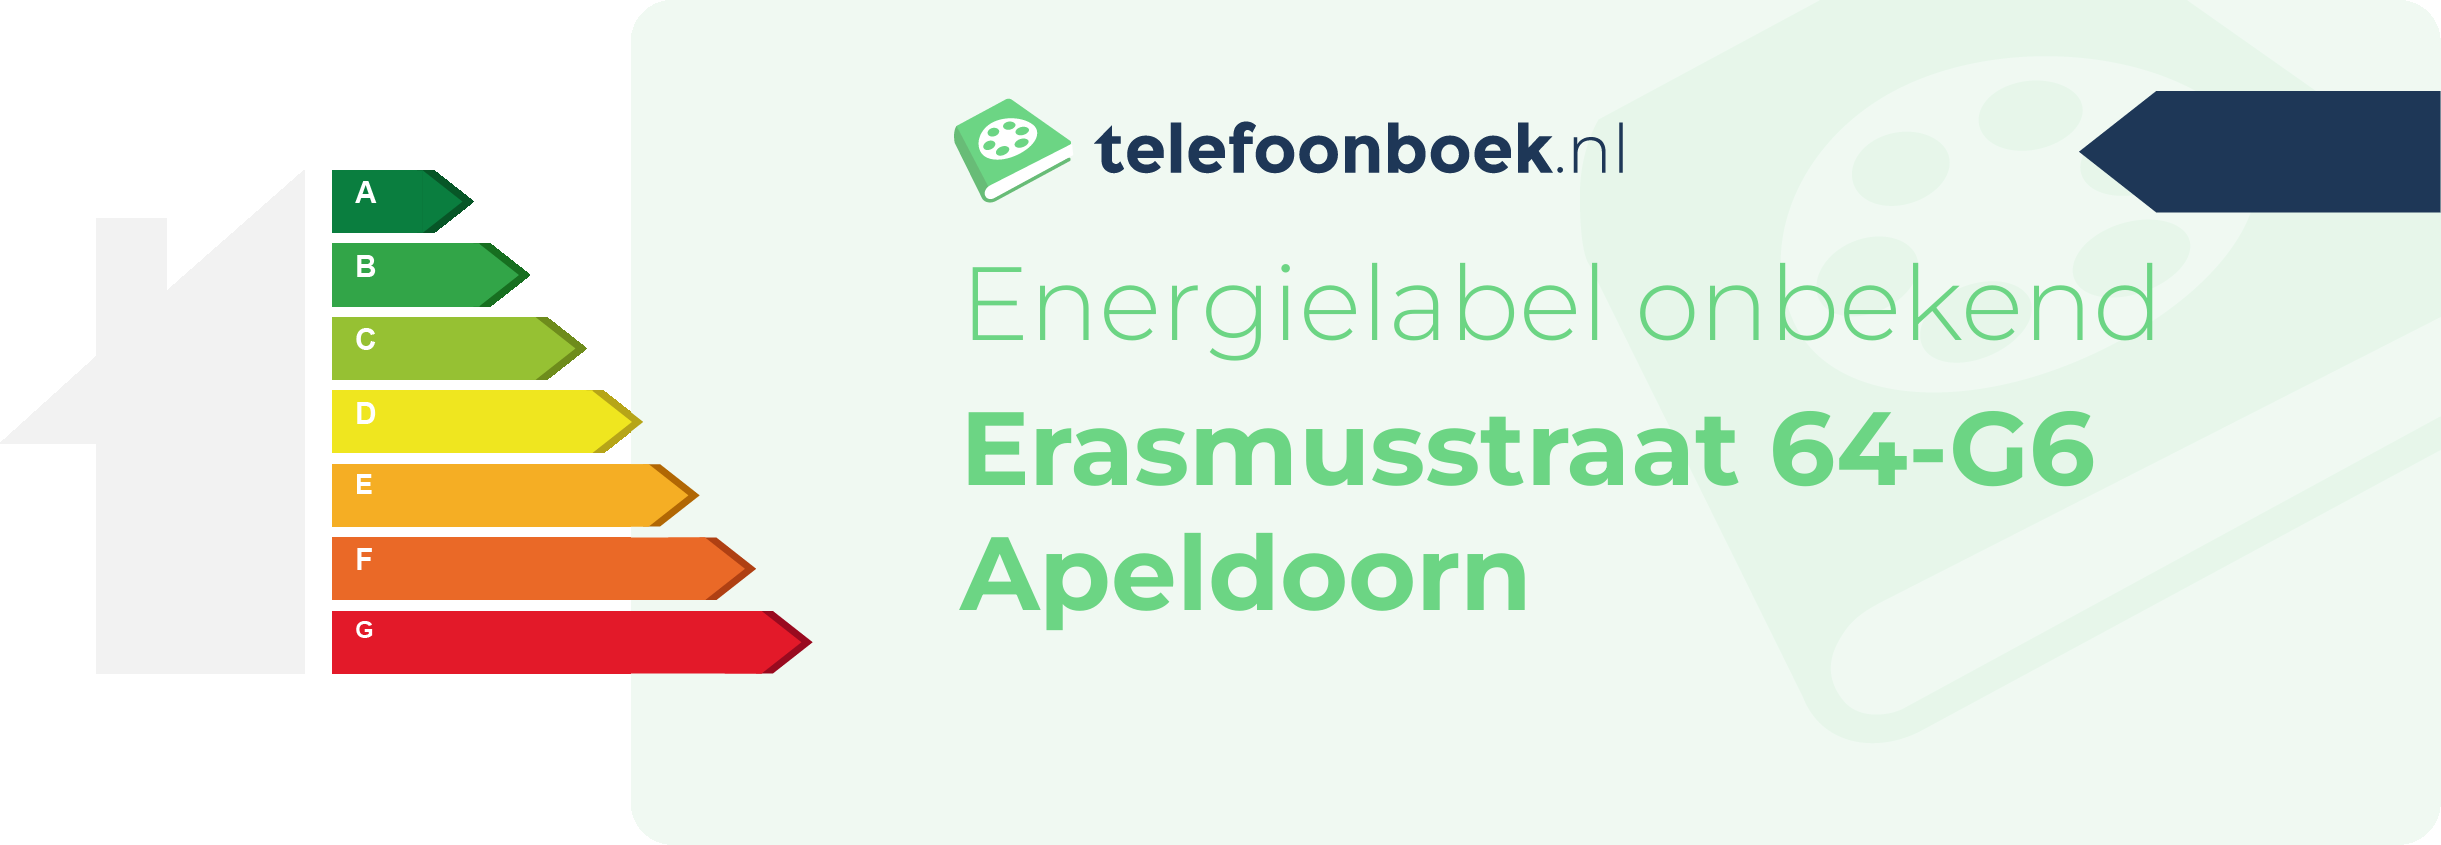 Energielabel Erasmusstraat 64-G6 Apeldoorn